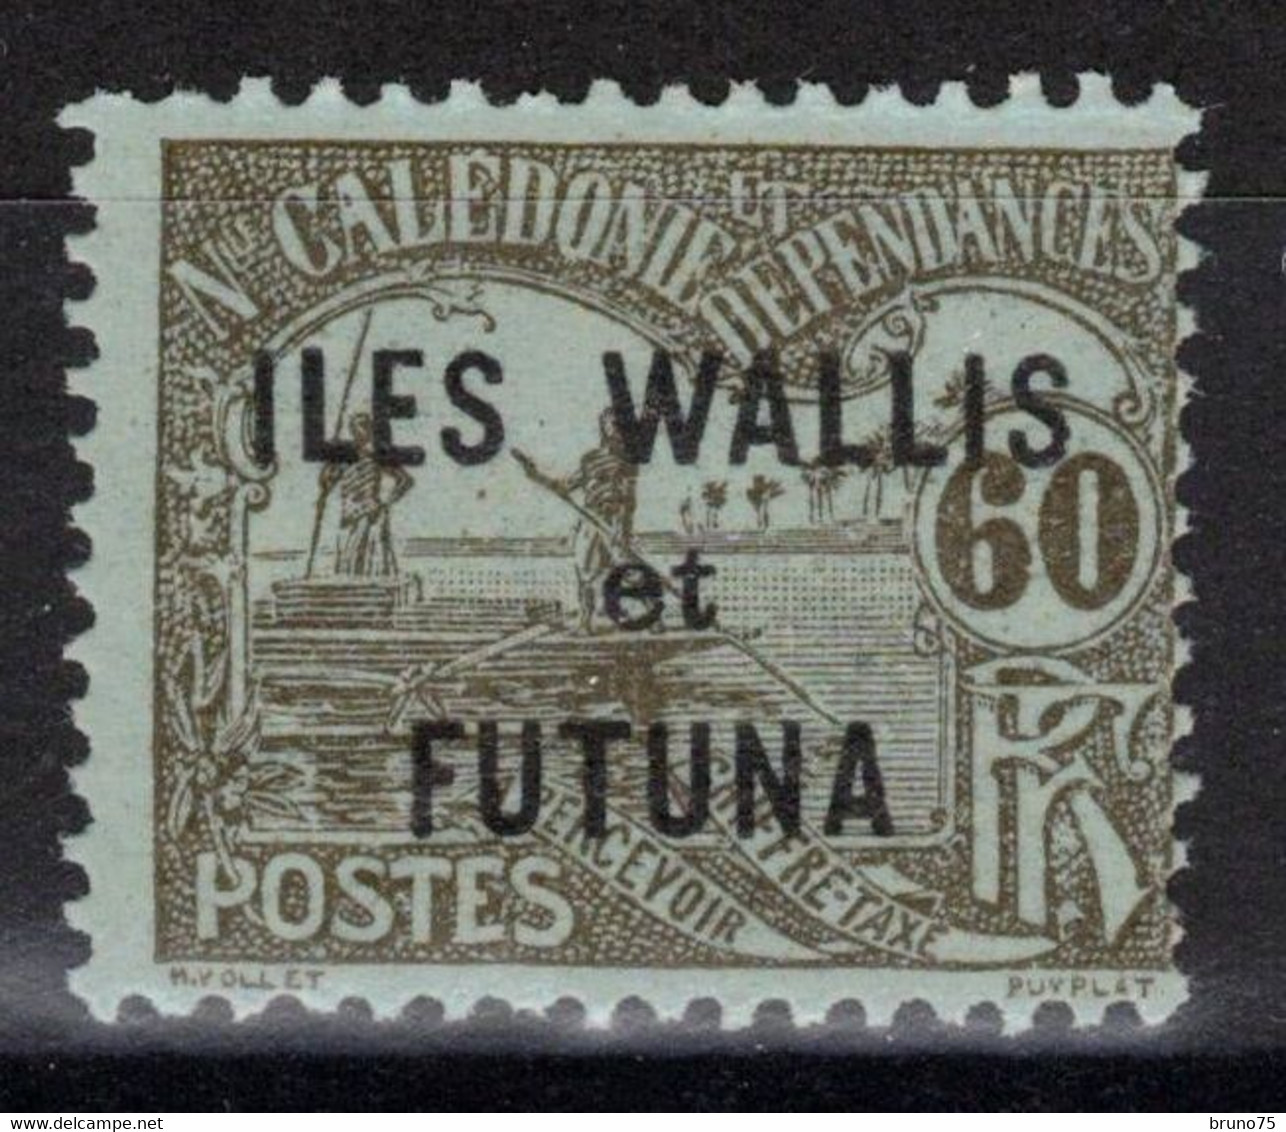 Wallis Et Futuna - YT Taxe 7 * MH - 1920 - Timbres-taxe